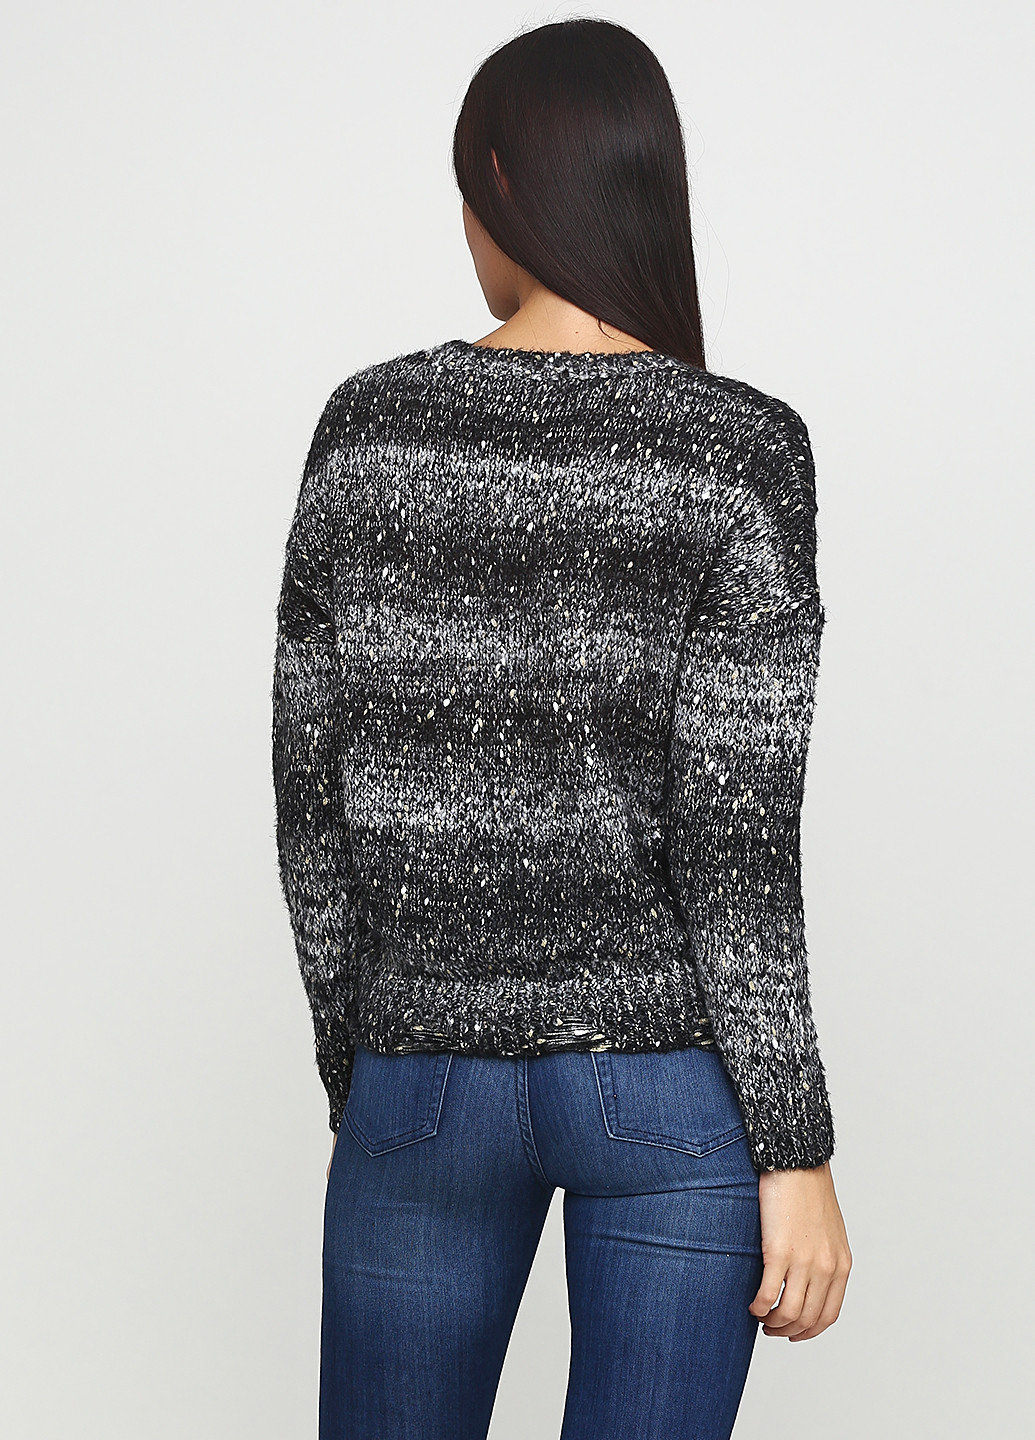 Комбинированный зимний пуловер пуловер Amo & Roma